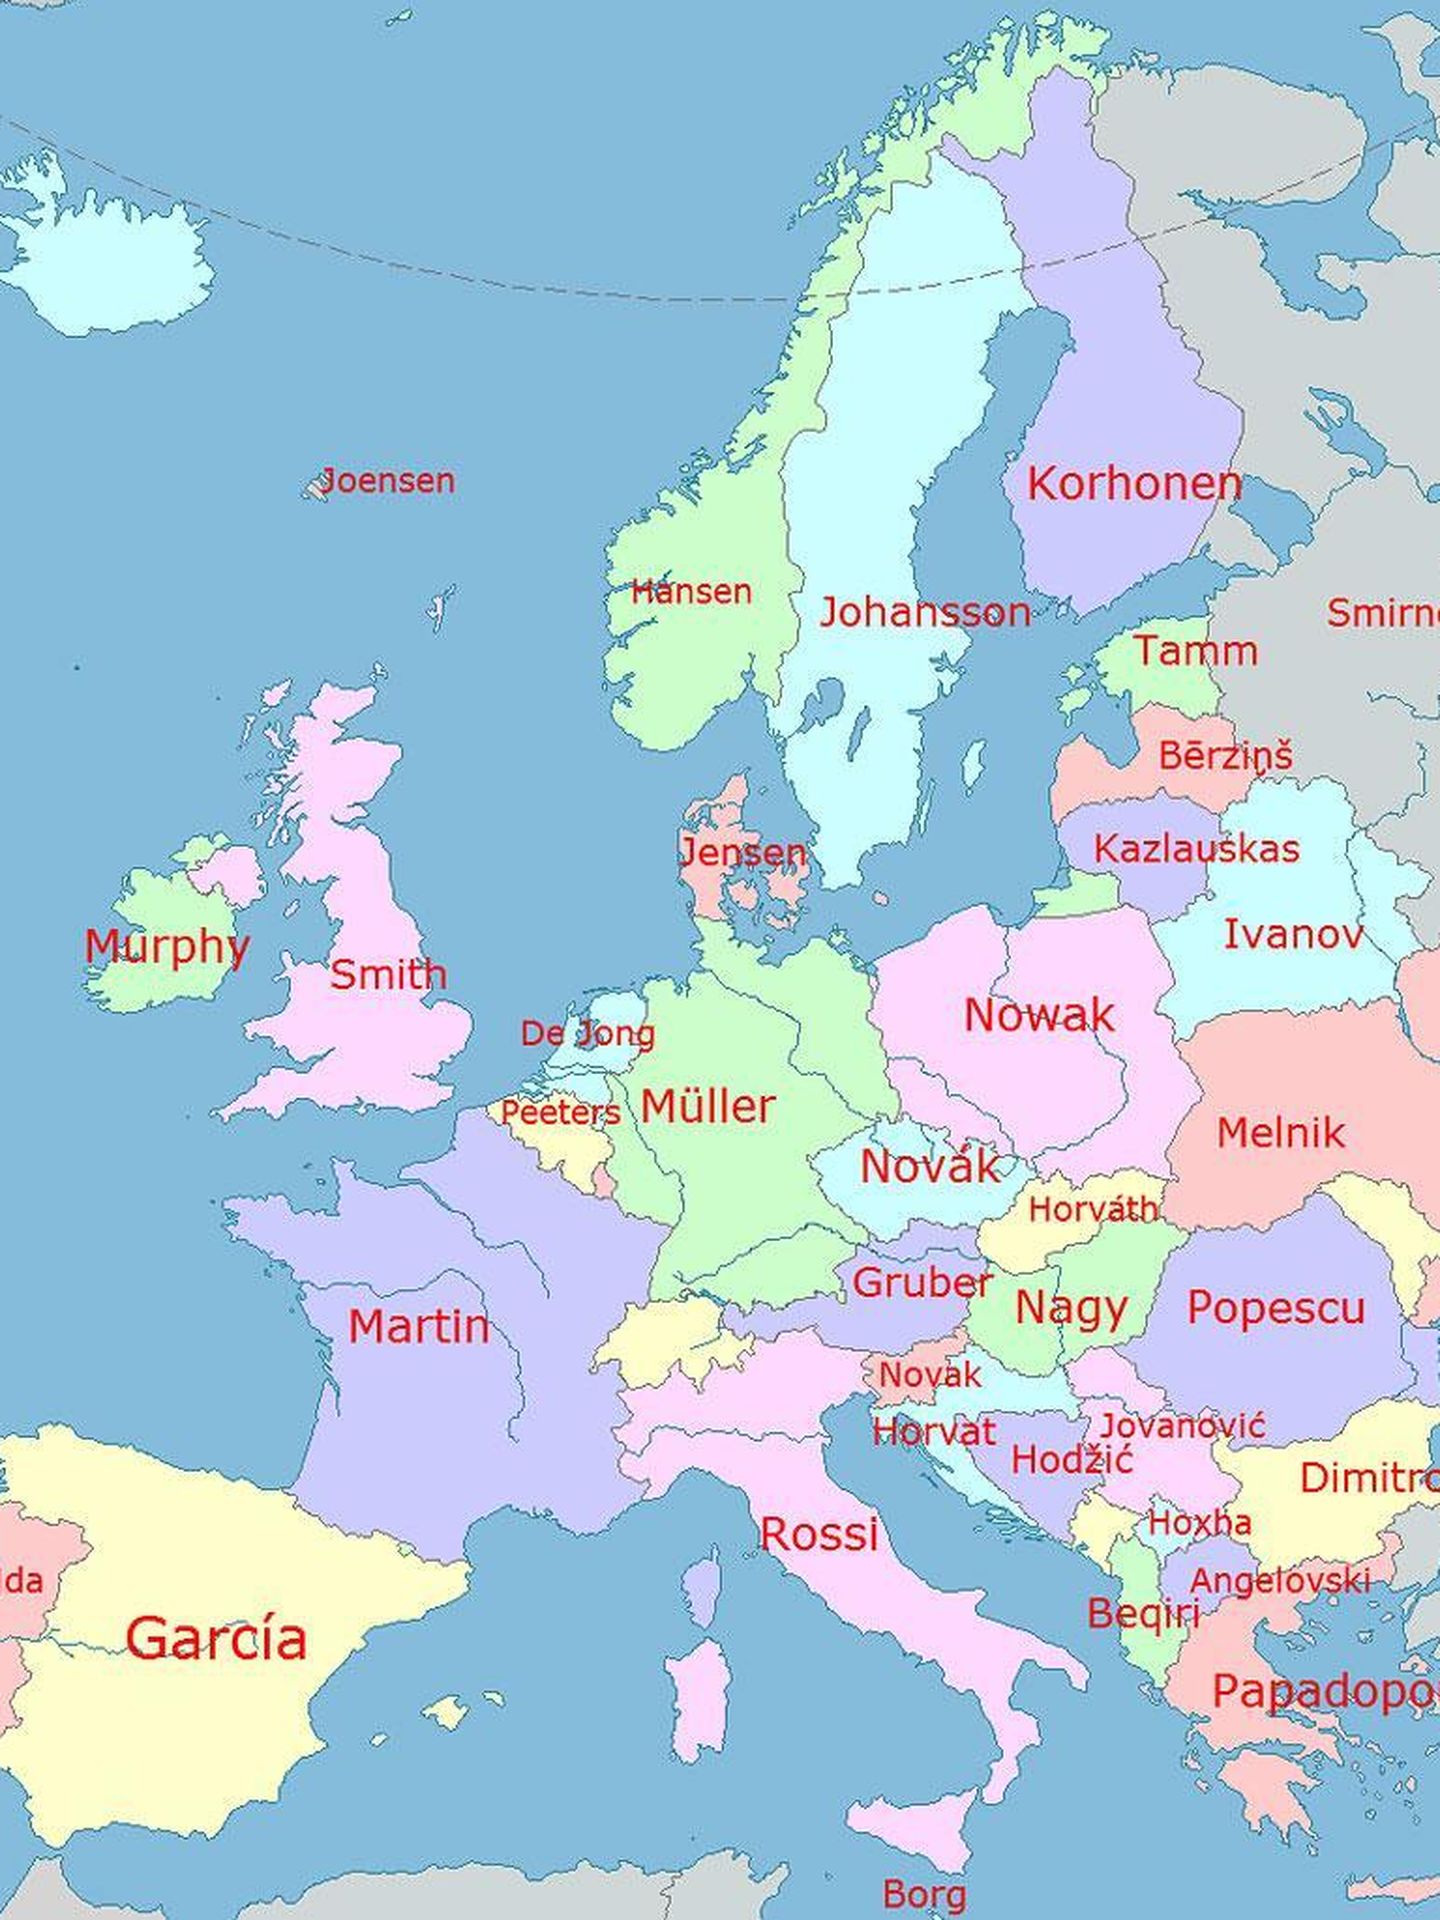 Los apellidos más comunes de Europa. (Imgur)